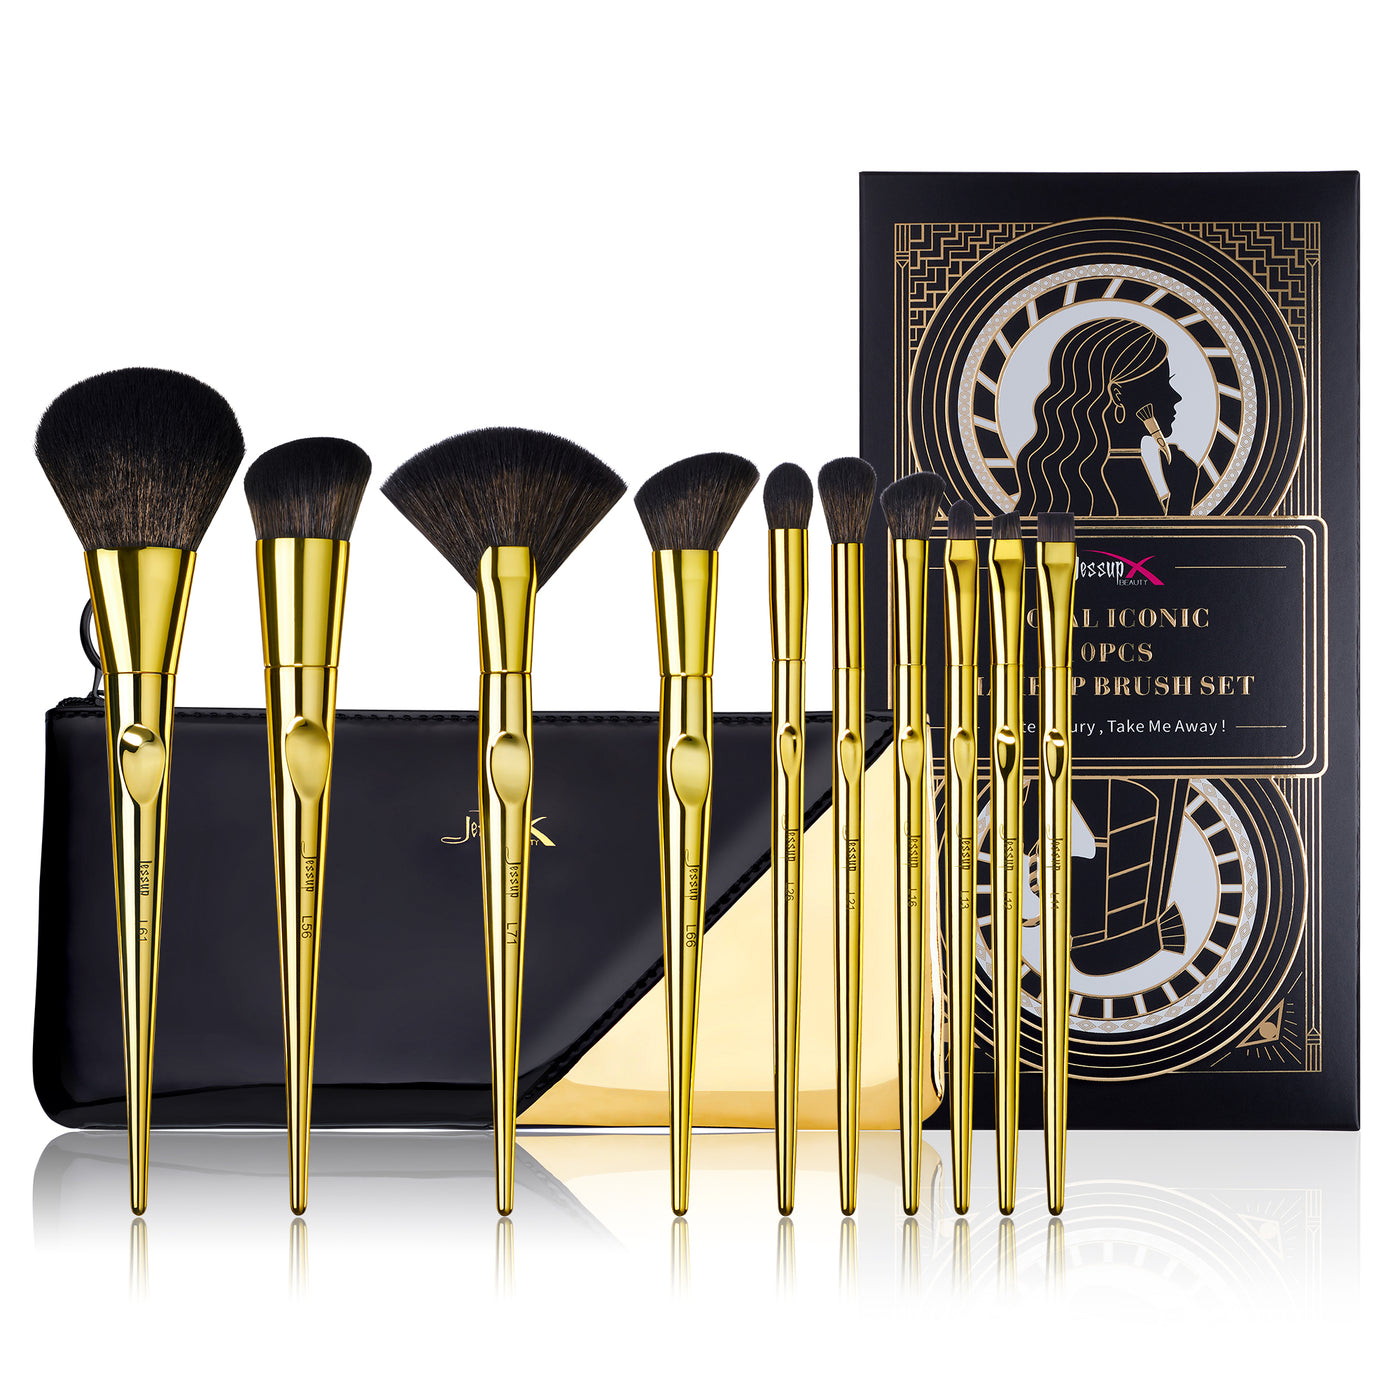 Luxury gold makeup brushes 10pcs - Jessup Beauty UK